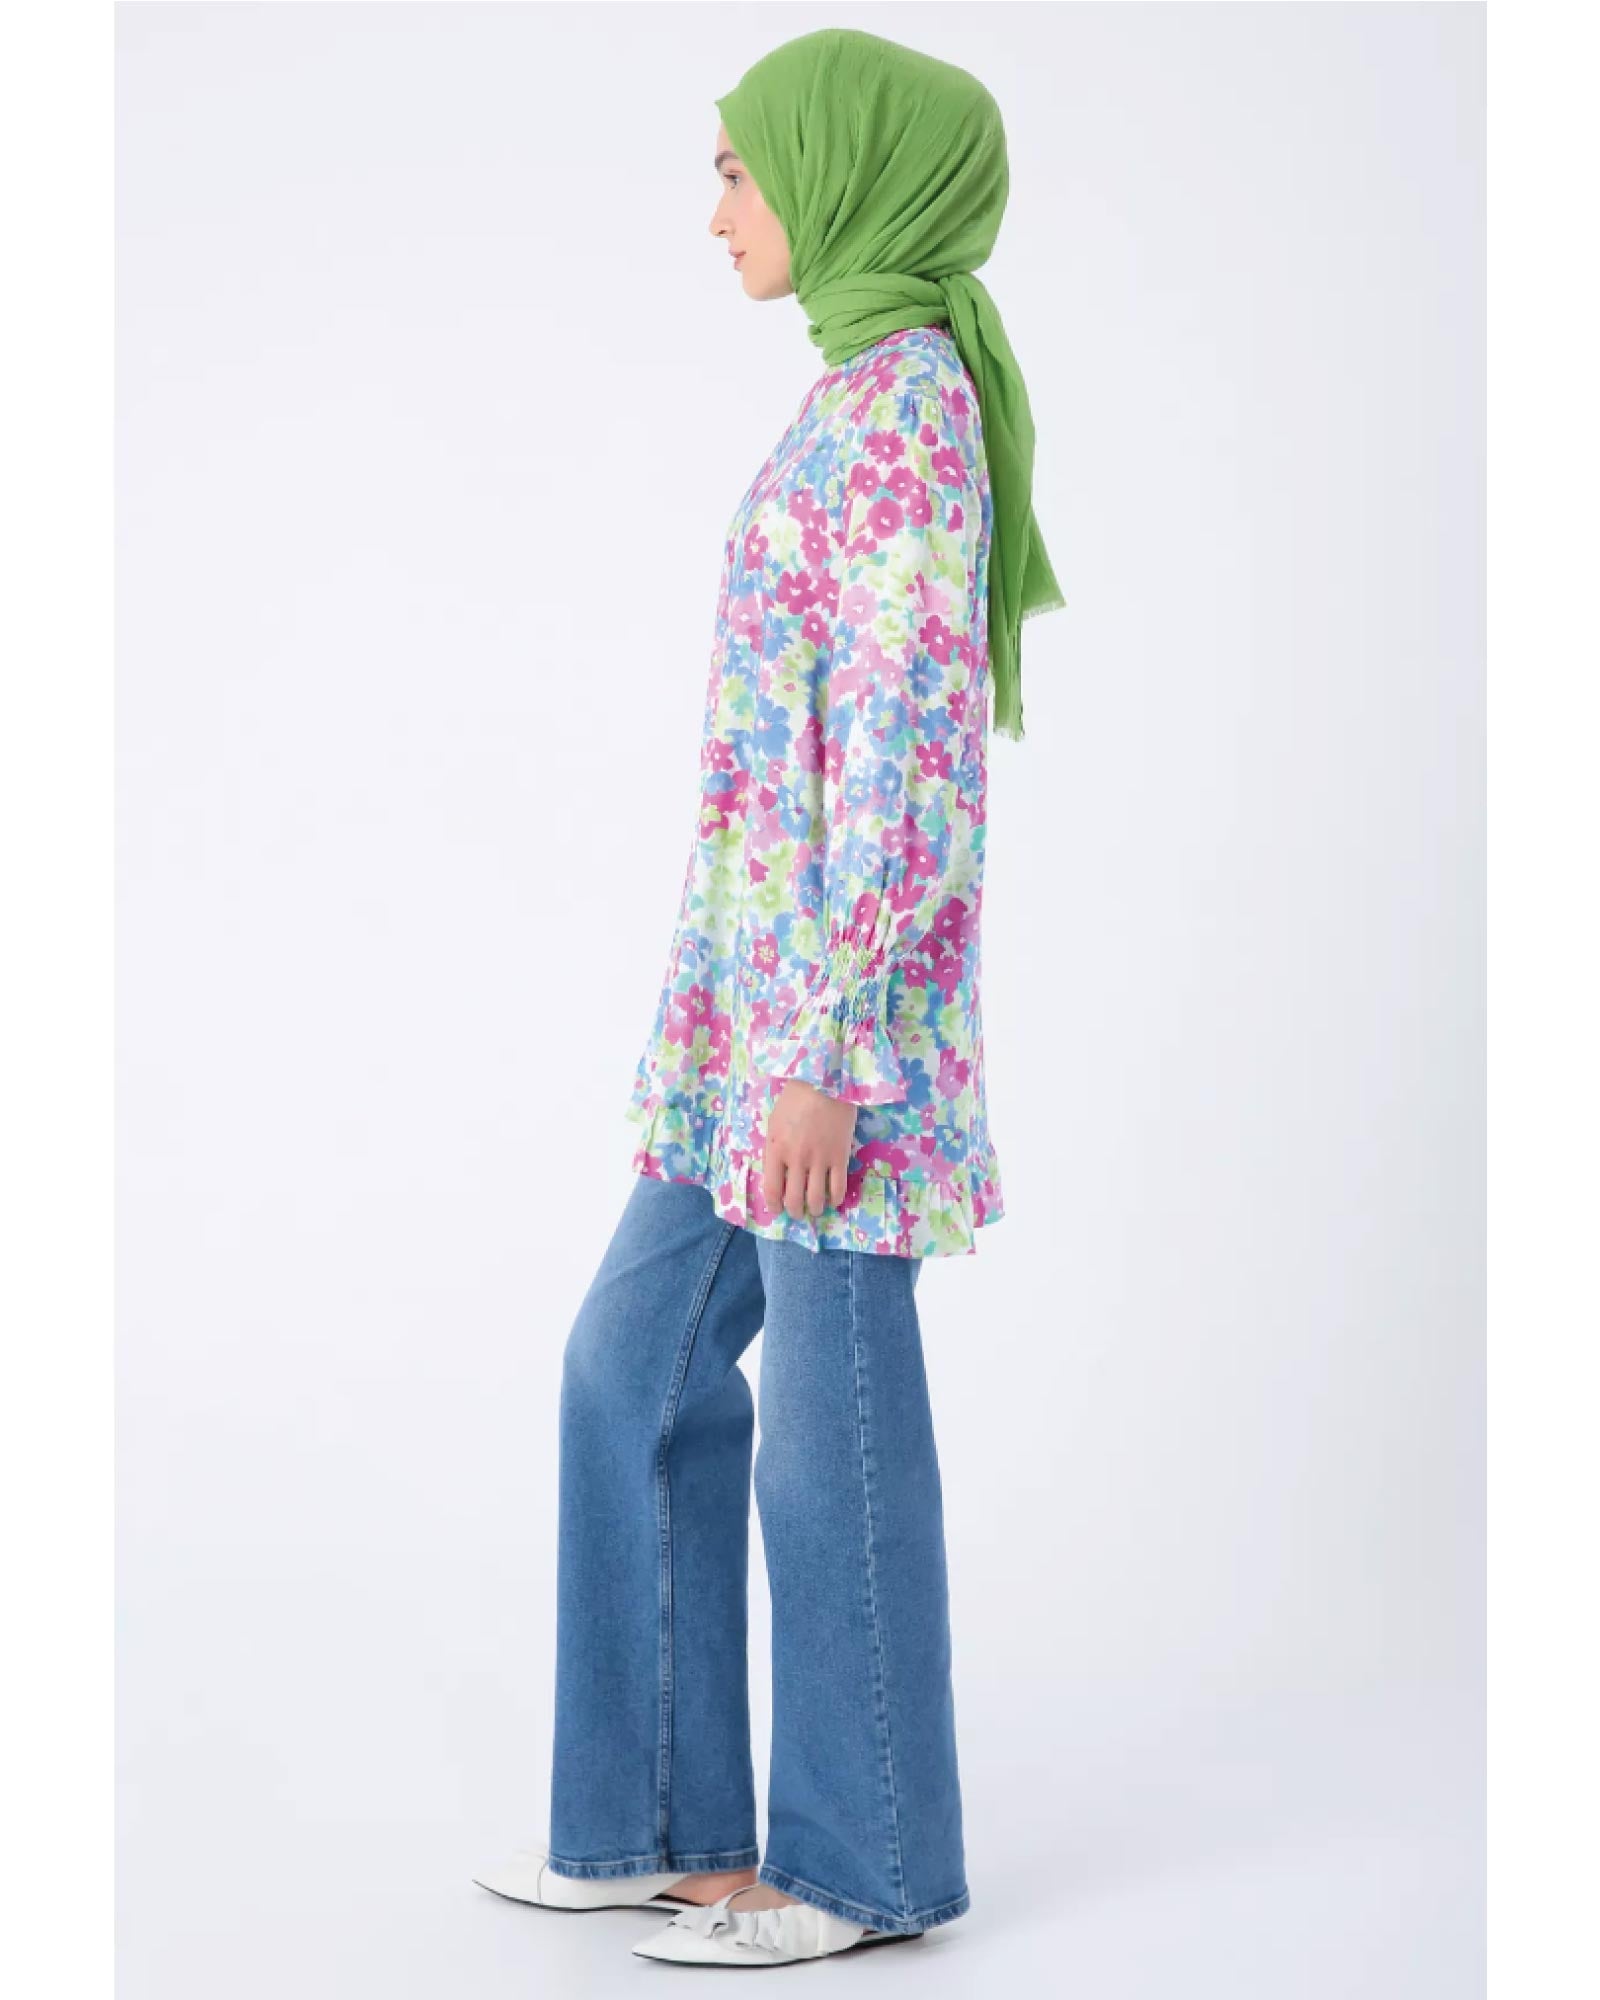 Hijab- Viskose-Rock mit Rüschen am Saum und gemustertes Tunika mit Rüschen an den Ärmeln